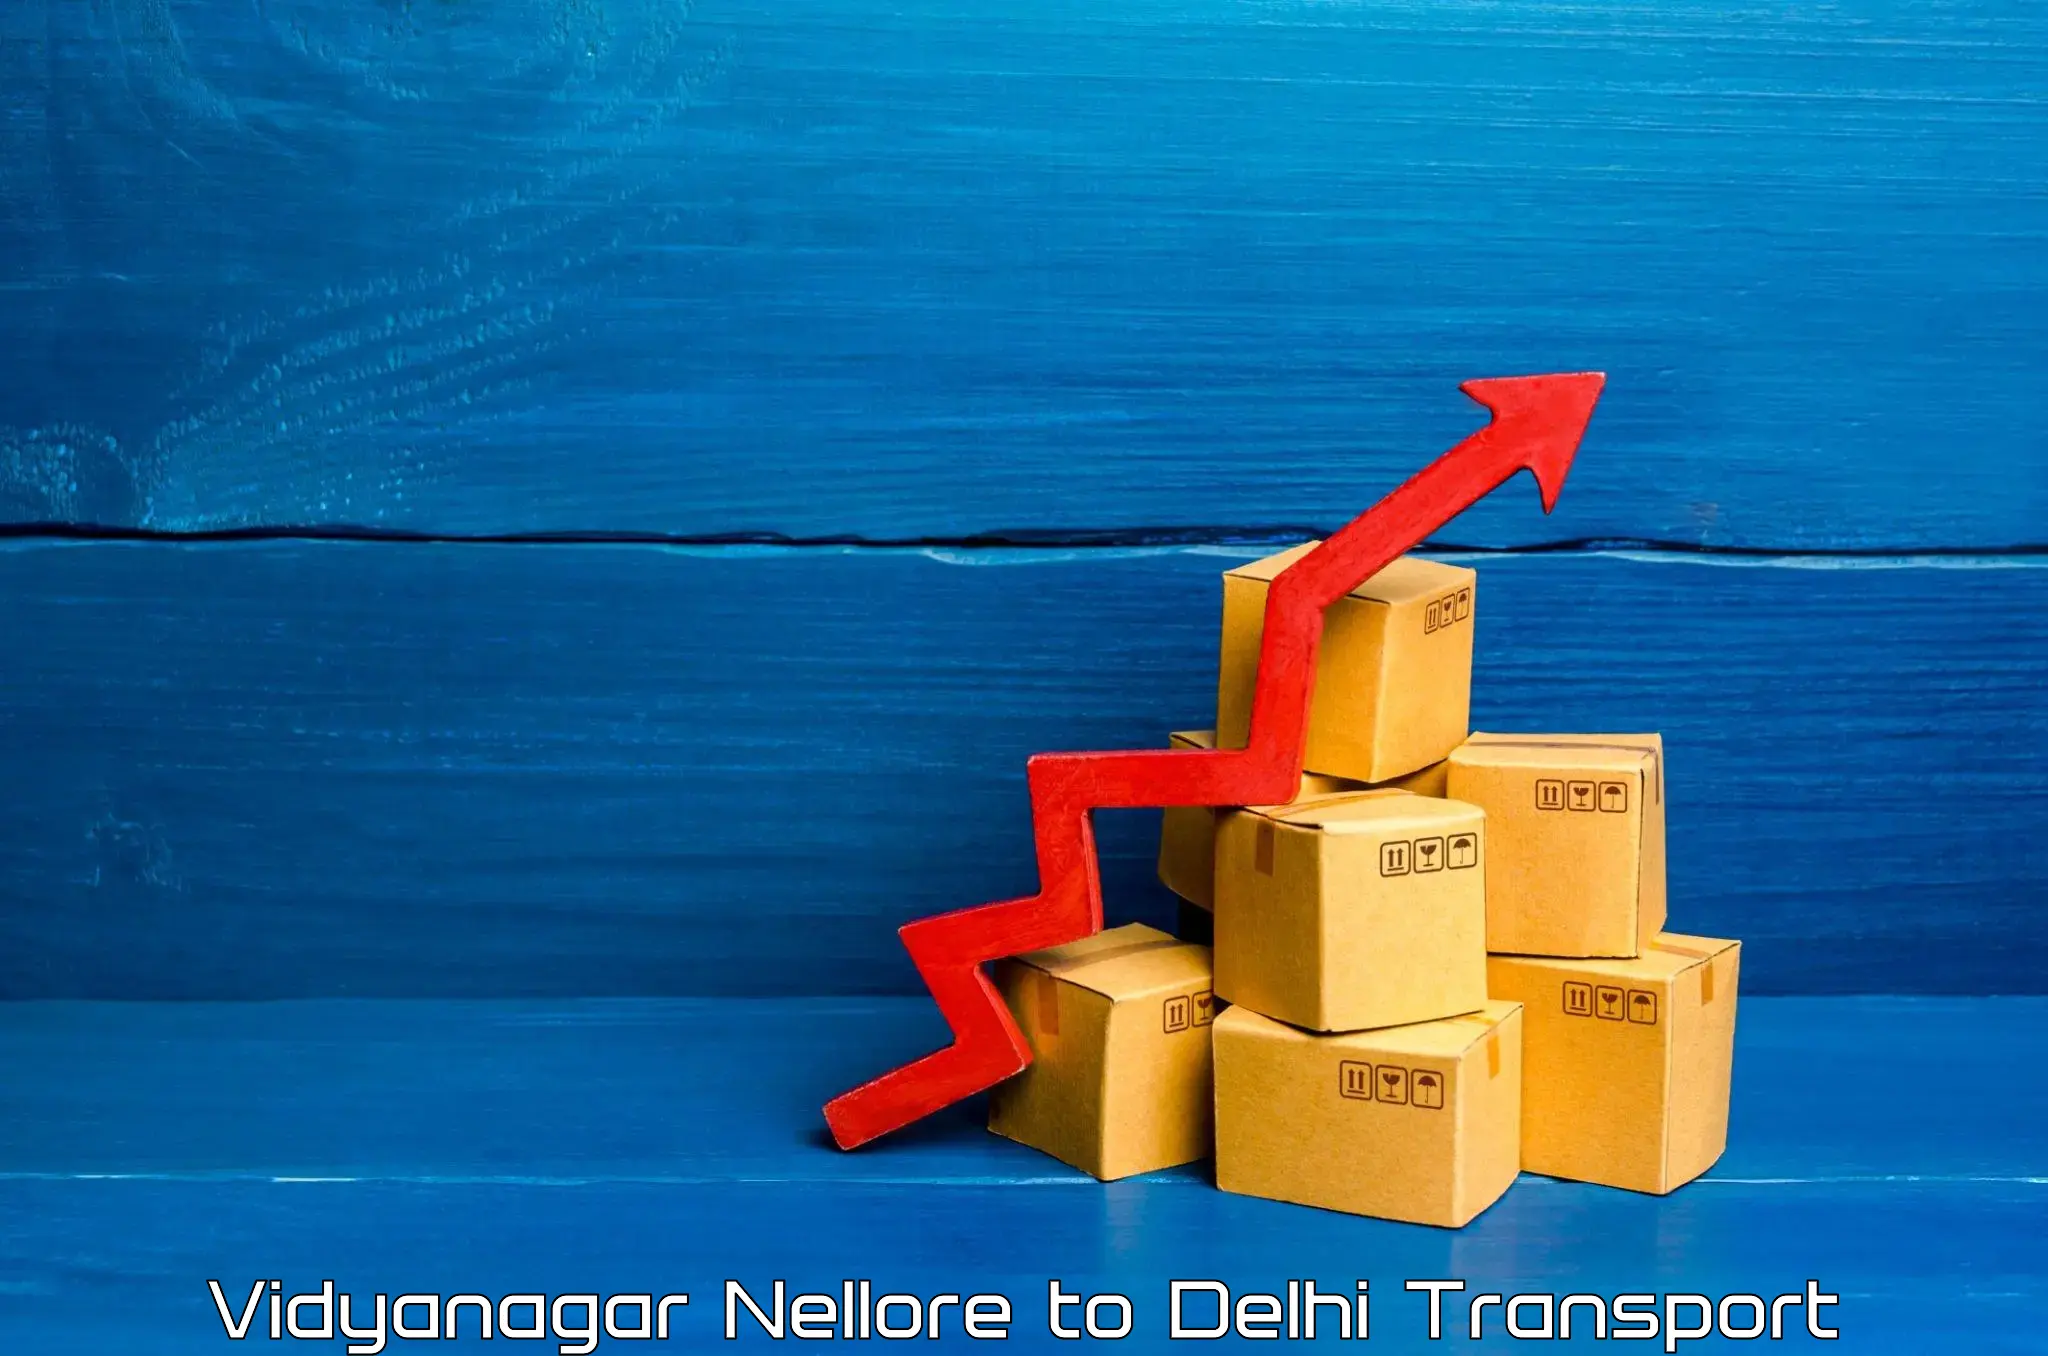 Domestic goods transportation services Vidyanagar Nellore to Delhi